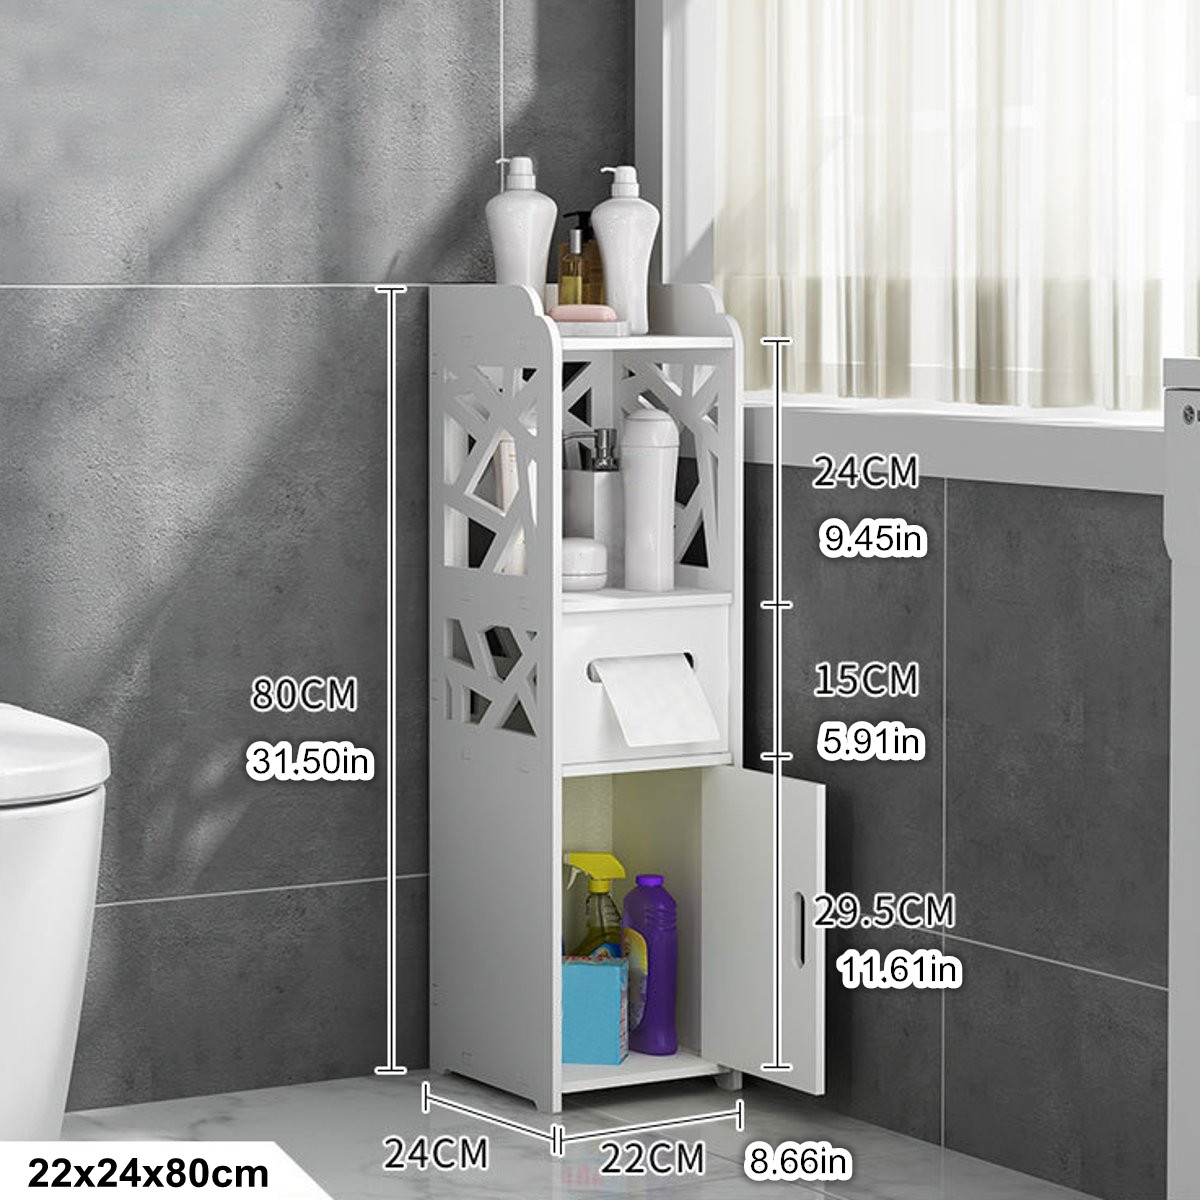 22x24x80cm-Bathroom-Floor-Standing-Storage-Cabinet-Washbasin-Shower-Corner-Shelf-1696935-1